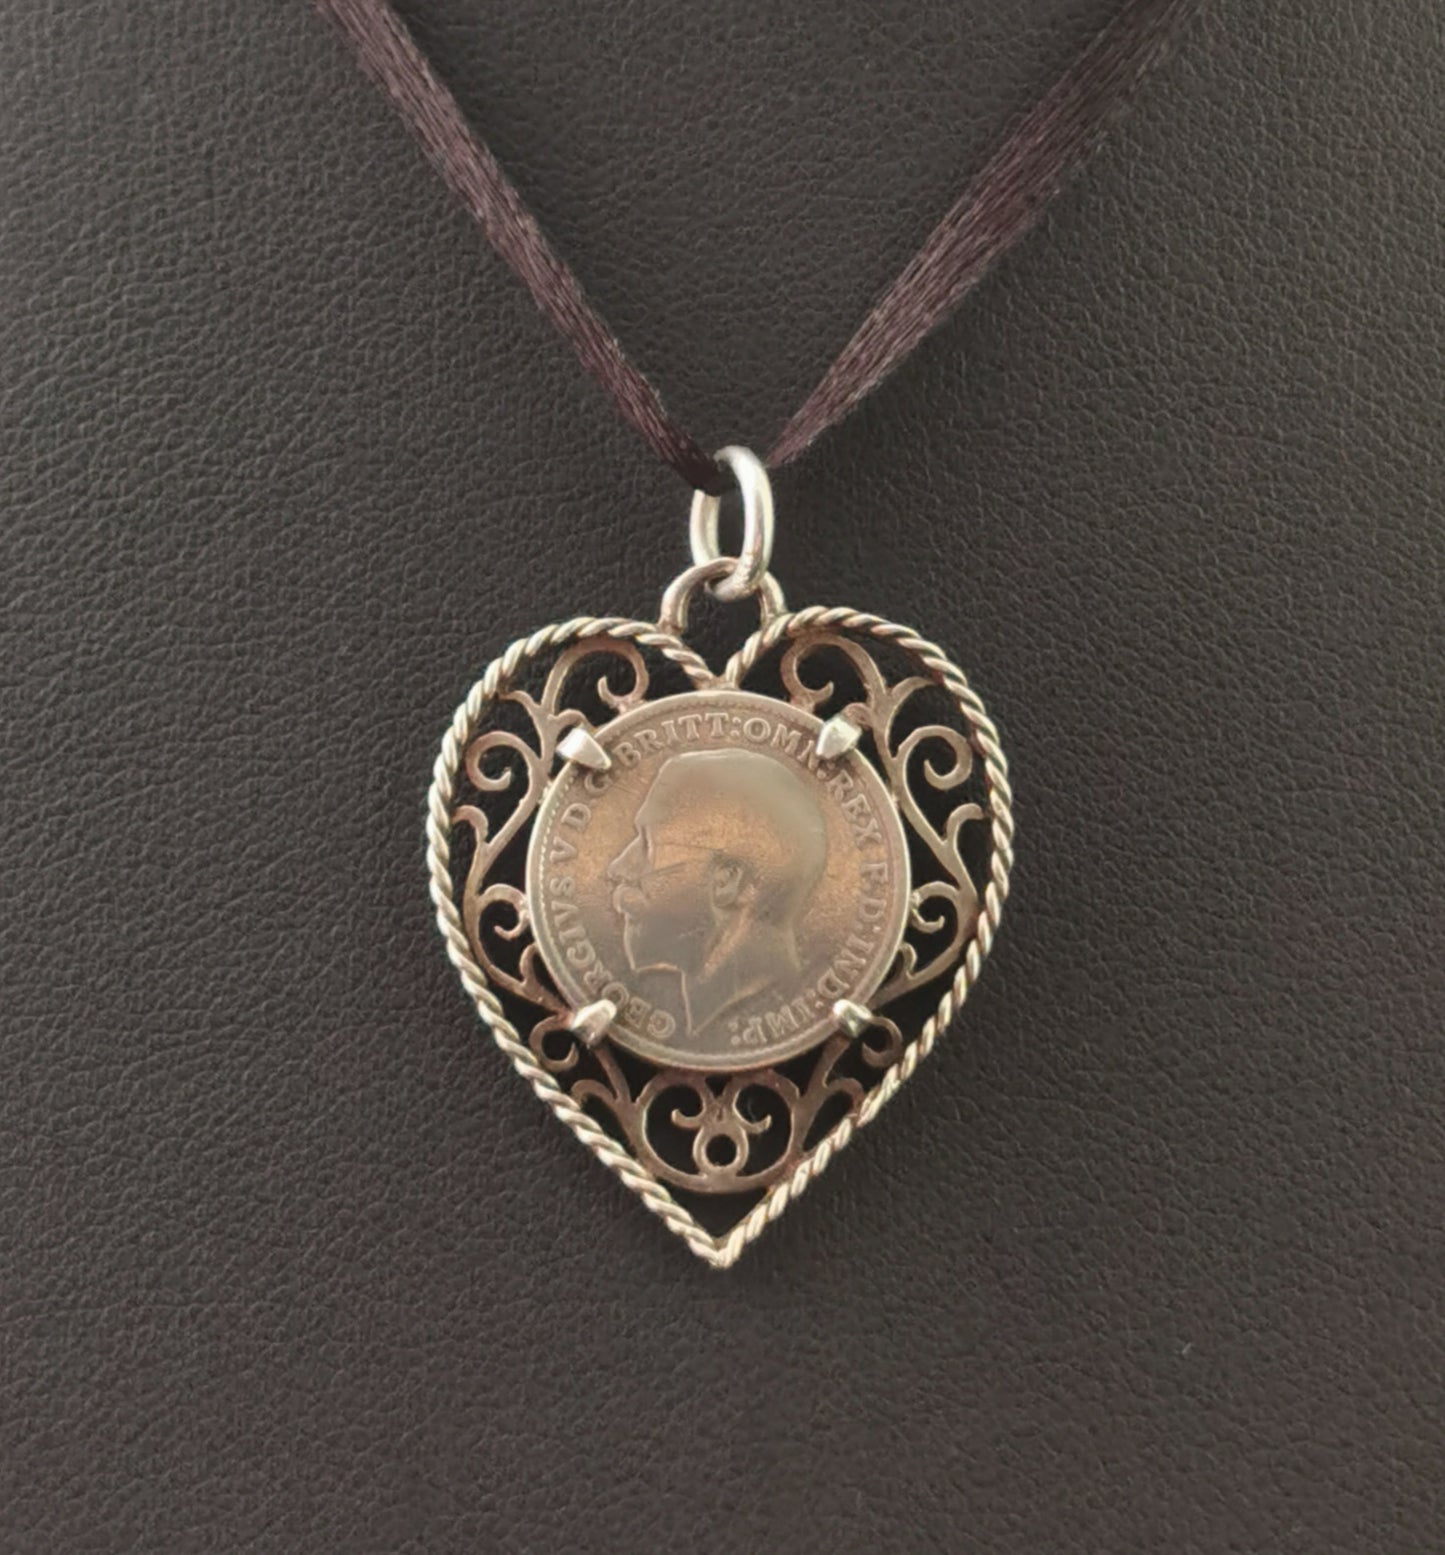 Antique silver coin pendant, love heart, filigree